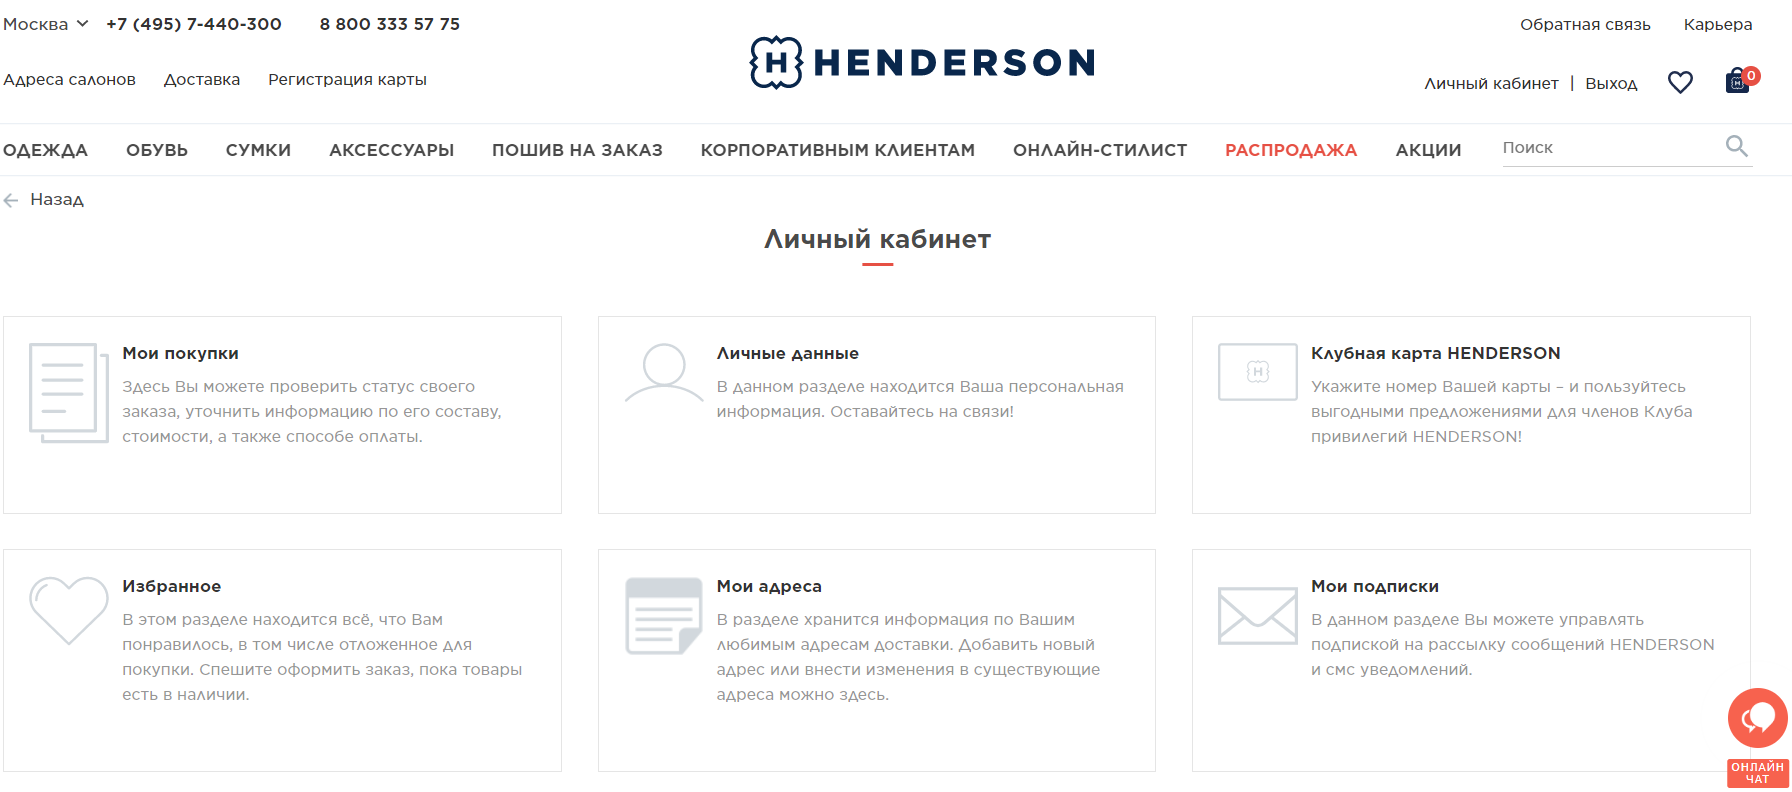 HENDERSON скриншот личного кабинета